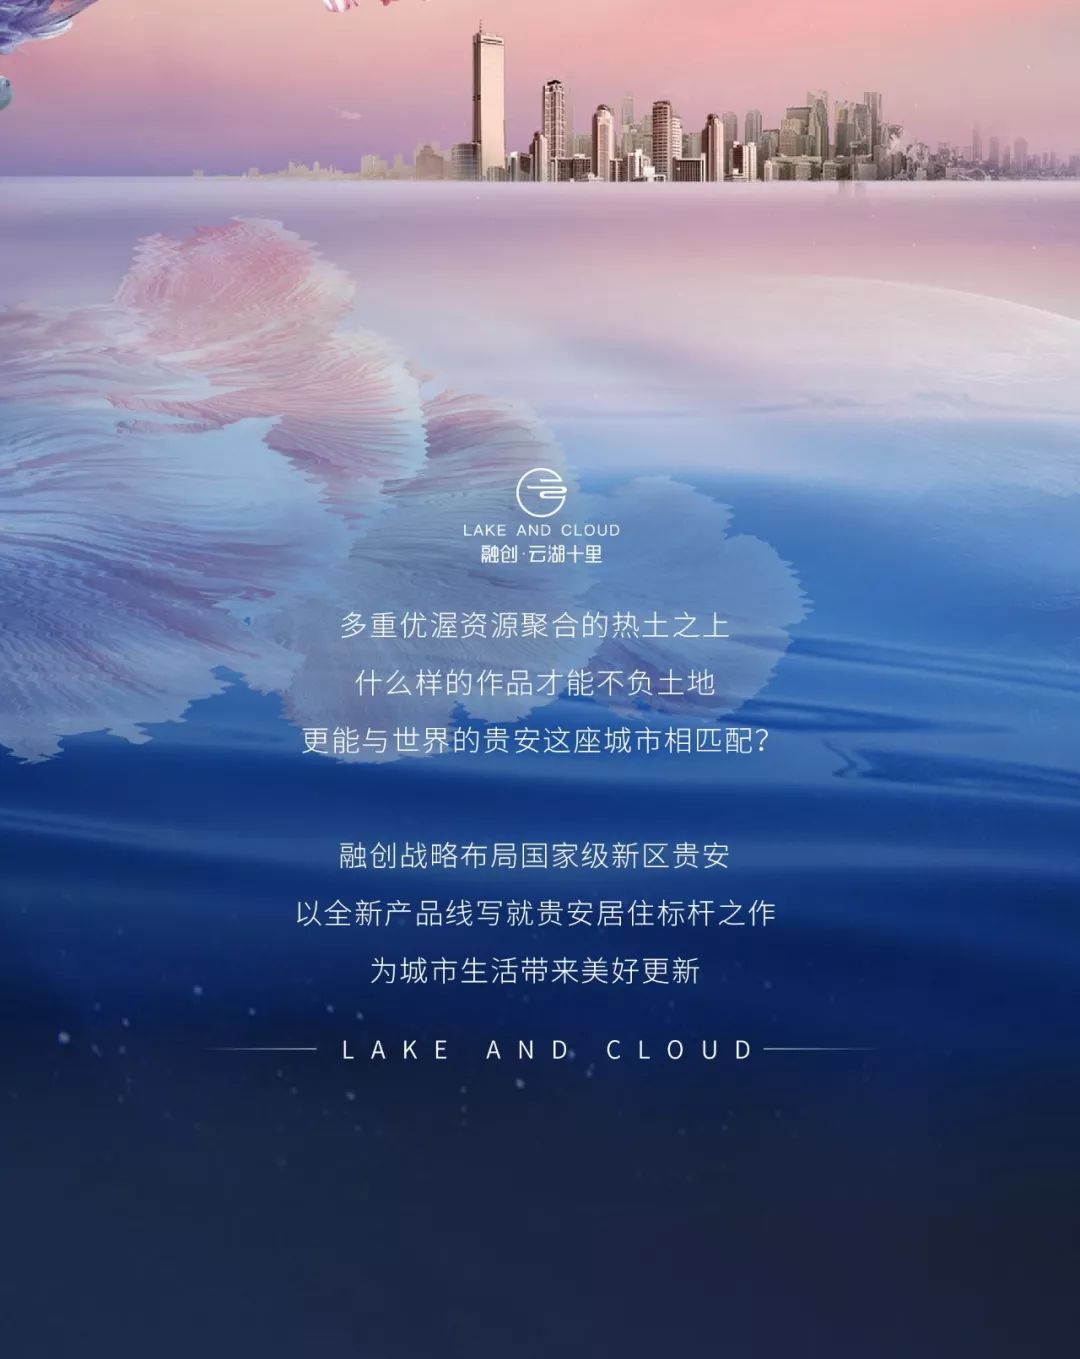 让贵阳生活与世界的平行 融创·云湖十里案名发布-中国网地产